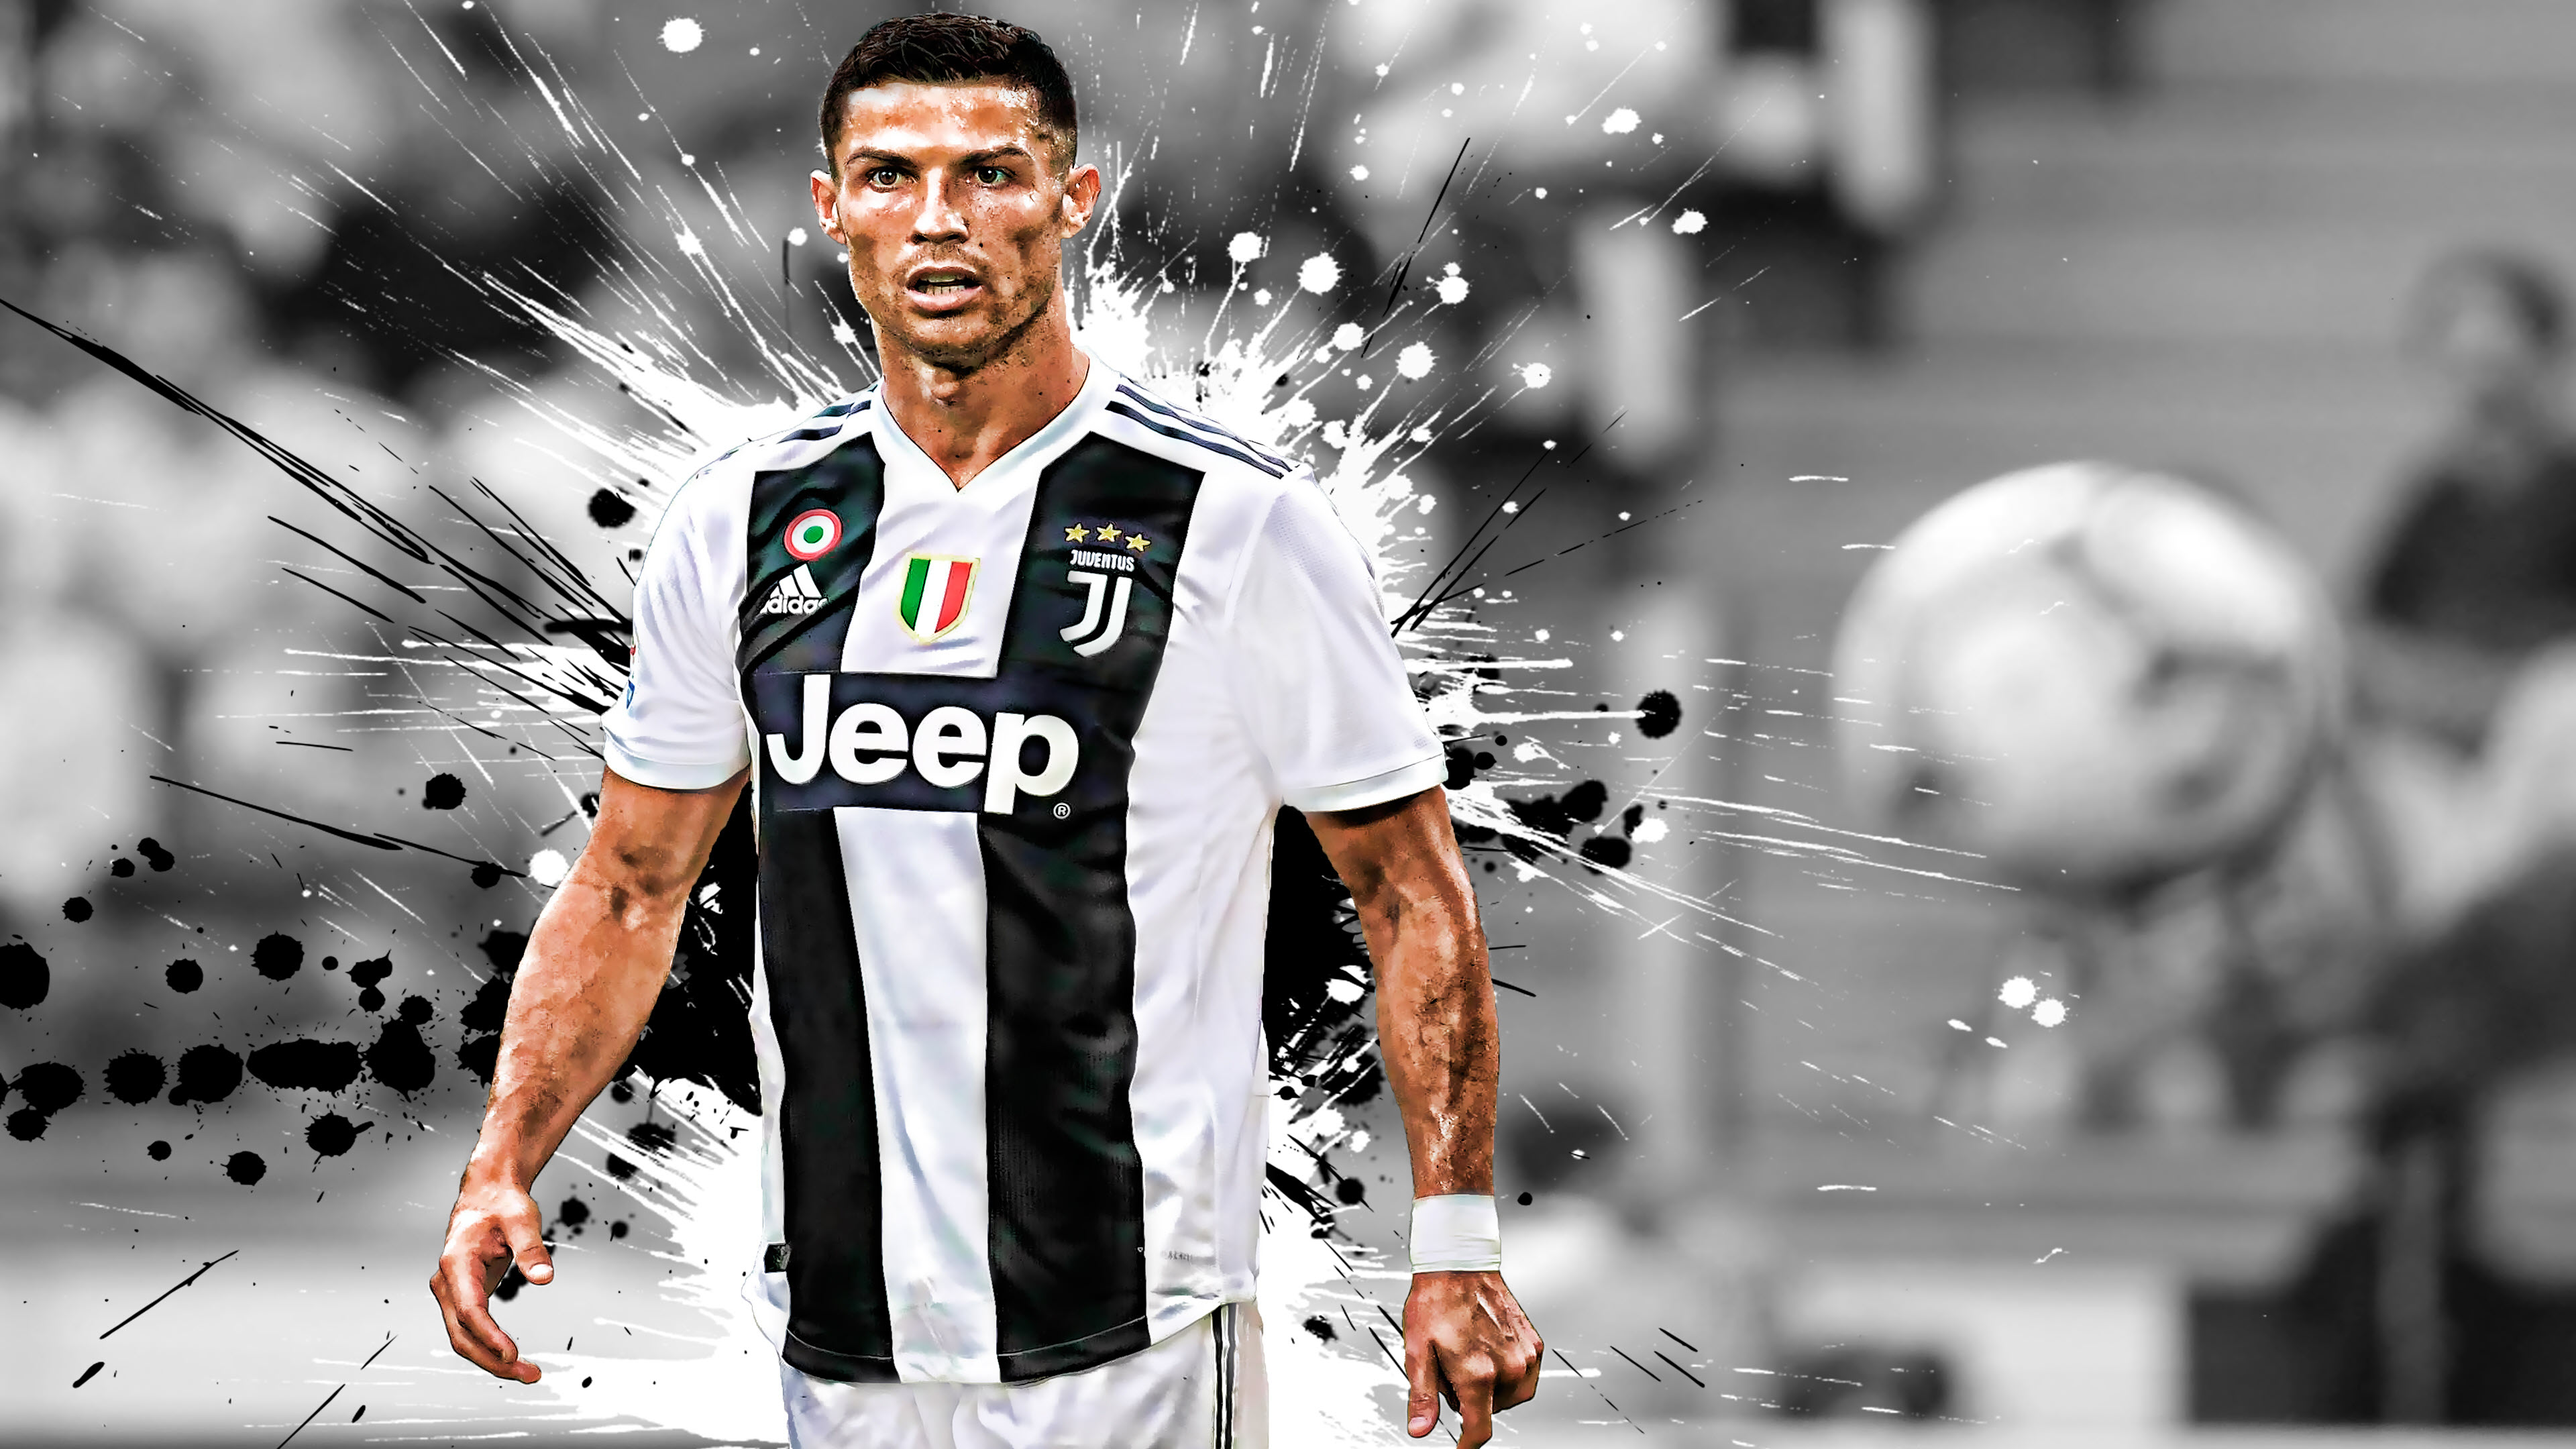 Cristiano Ronaldo Wallpapers  Top Những Hình Ảnh Đẹp